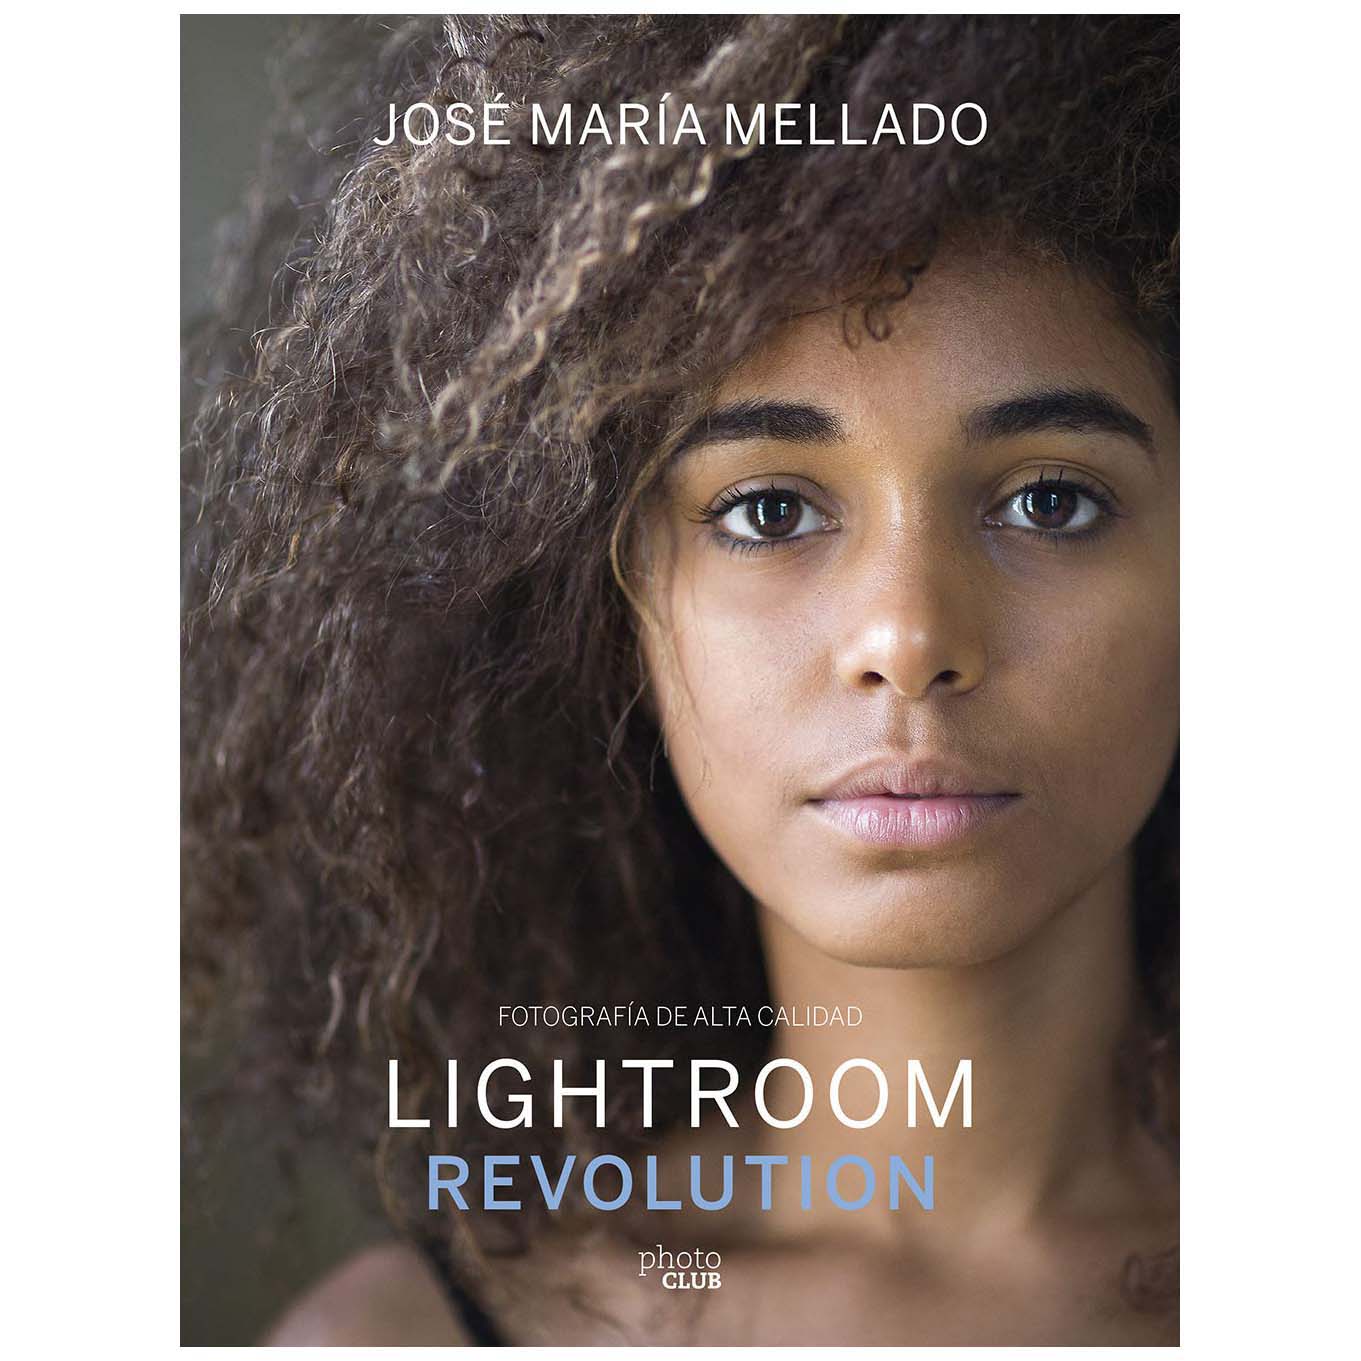 LIBRO LIGHTROOM REVOLUTION (JOSE MARIA MELLADO) LIBROS 